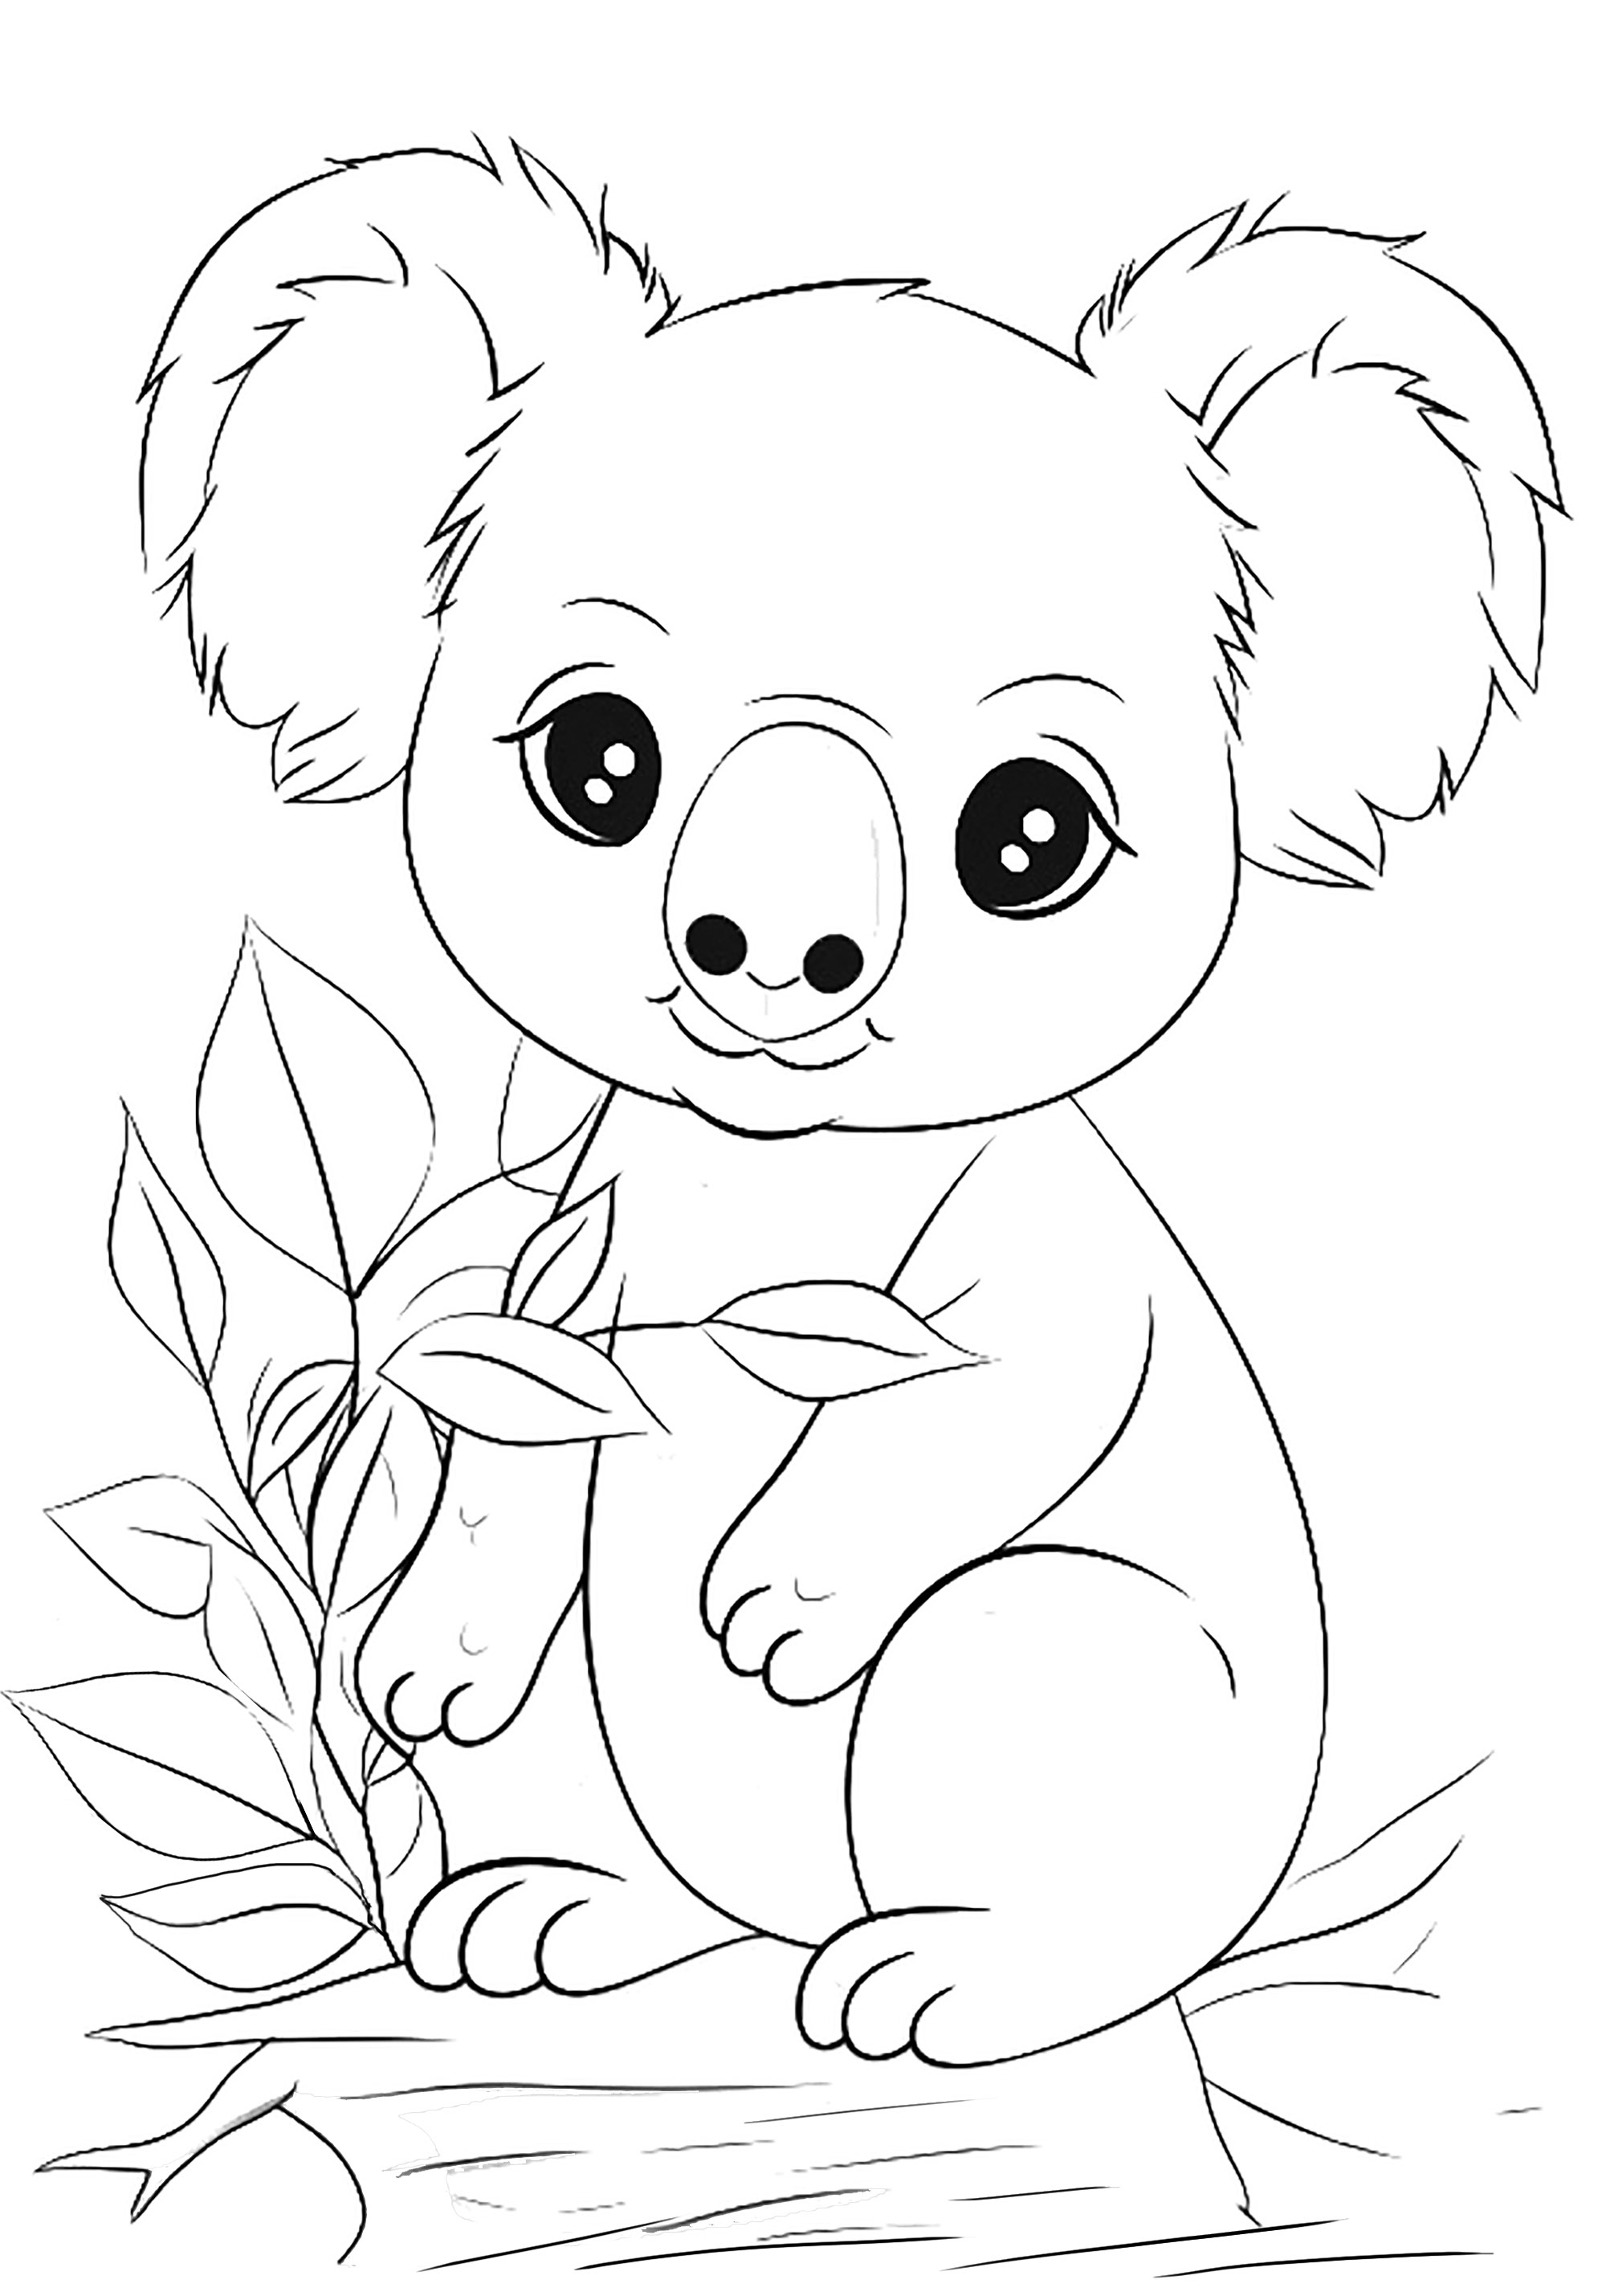 Dibujos para colorear gratis de Osos Koala para descargar, para niños